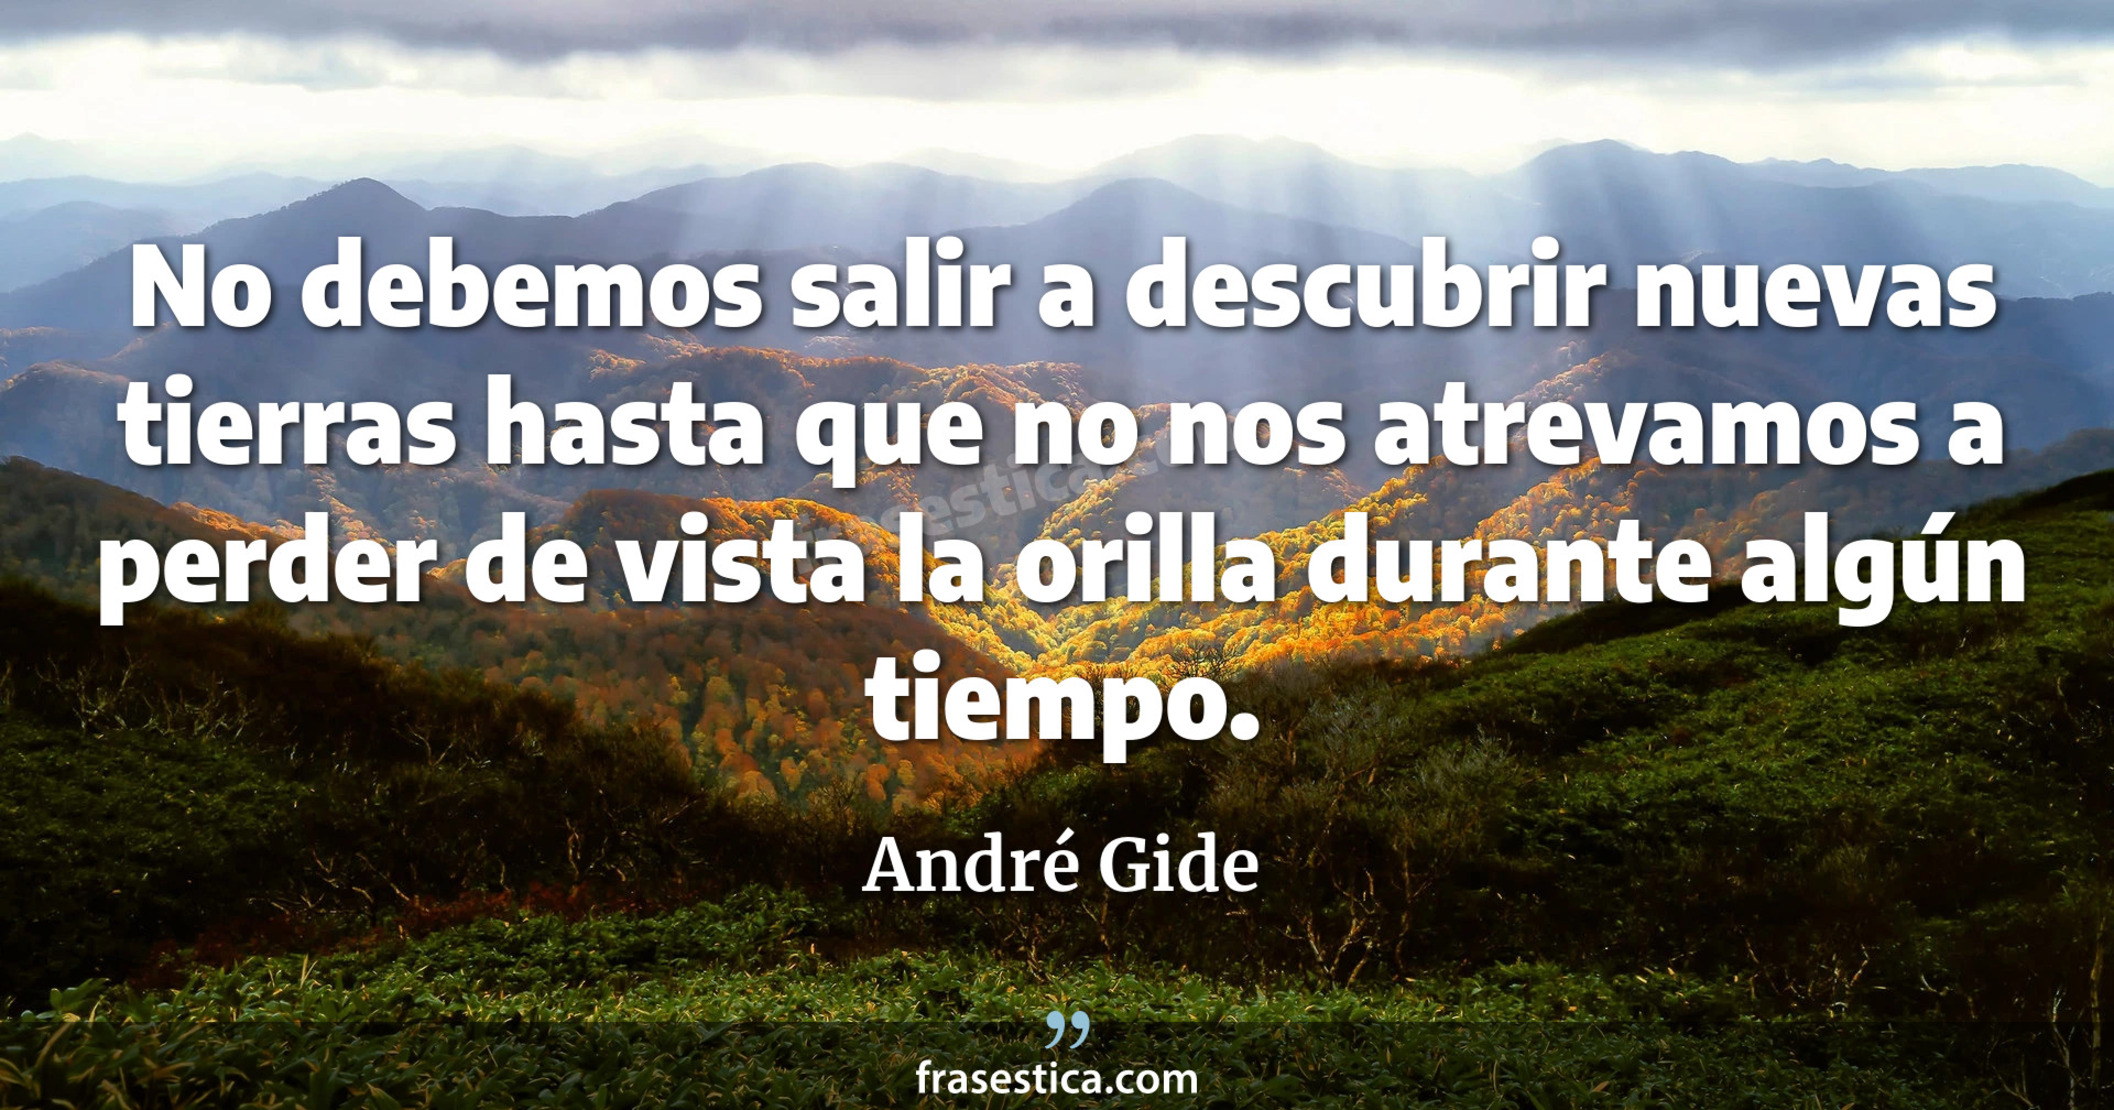 No debemos salir a descubrir nuevas tierras hasta que no nos atrevamos a perder de vista la orilla durante algún tiempo. - André Gide